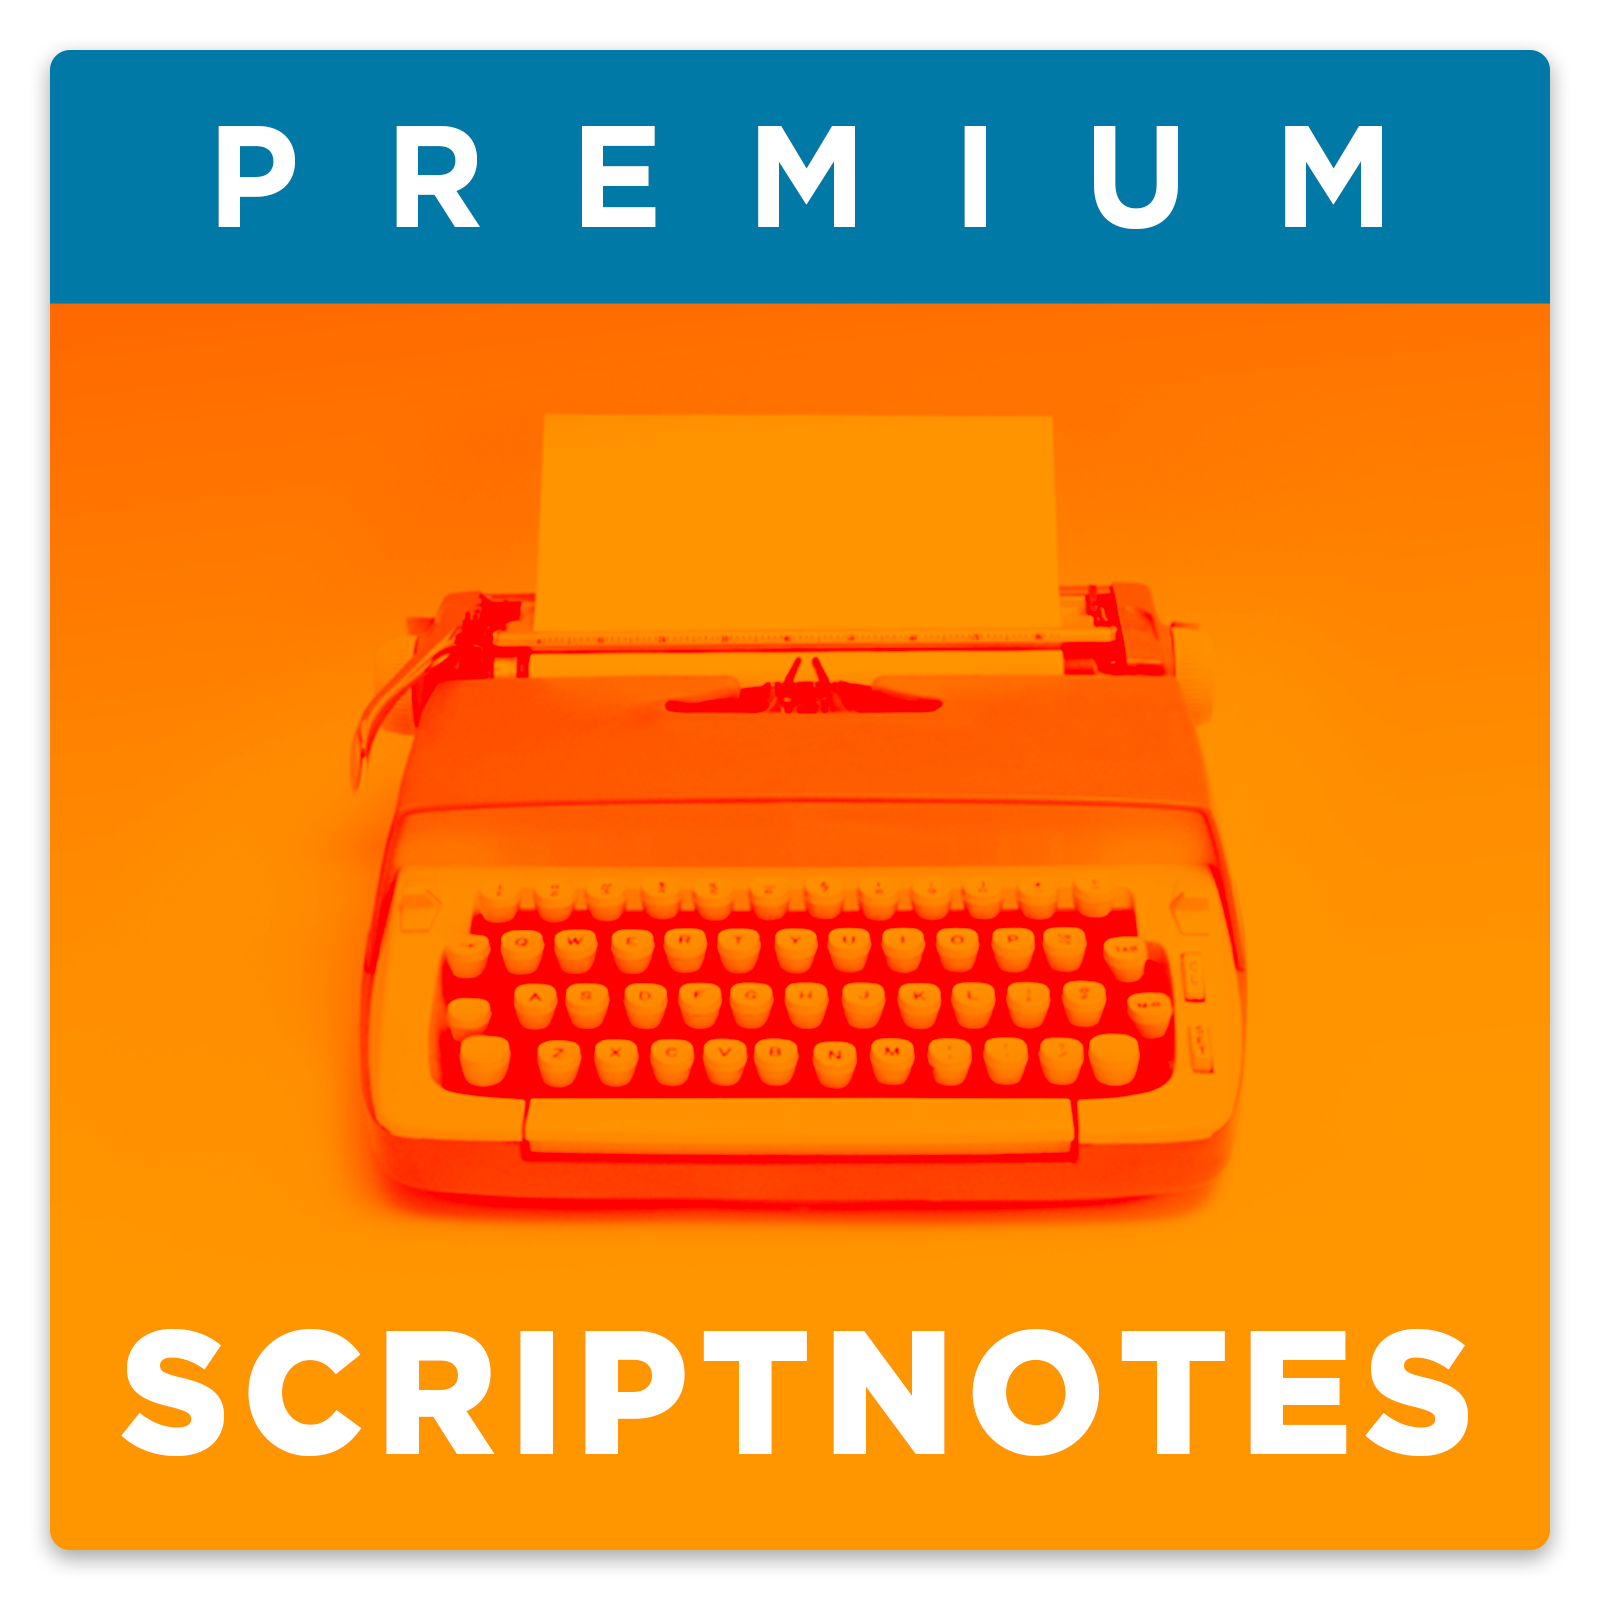 Scriptnotes logo